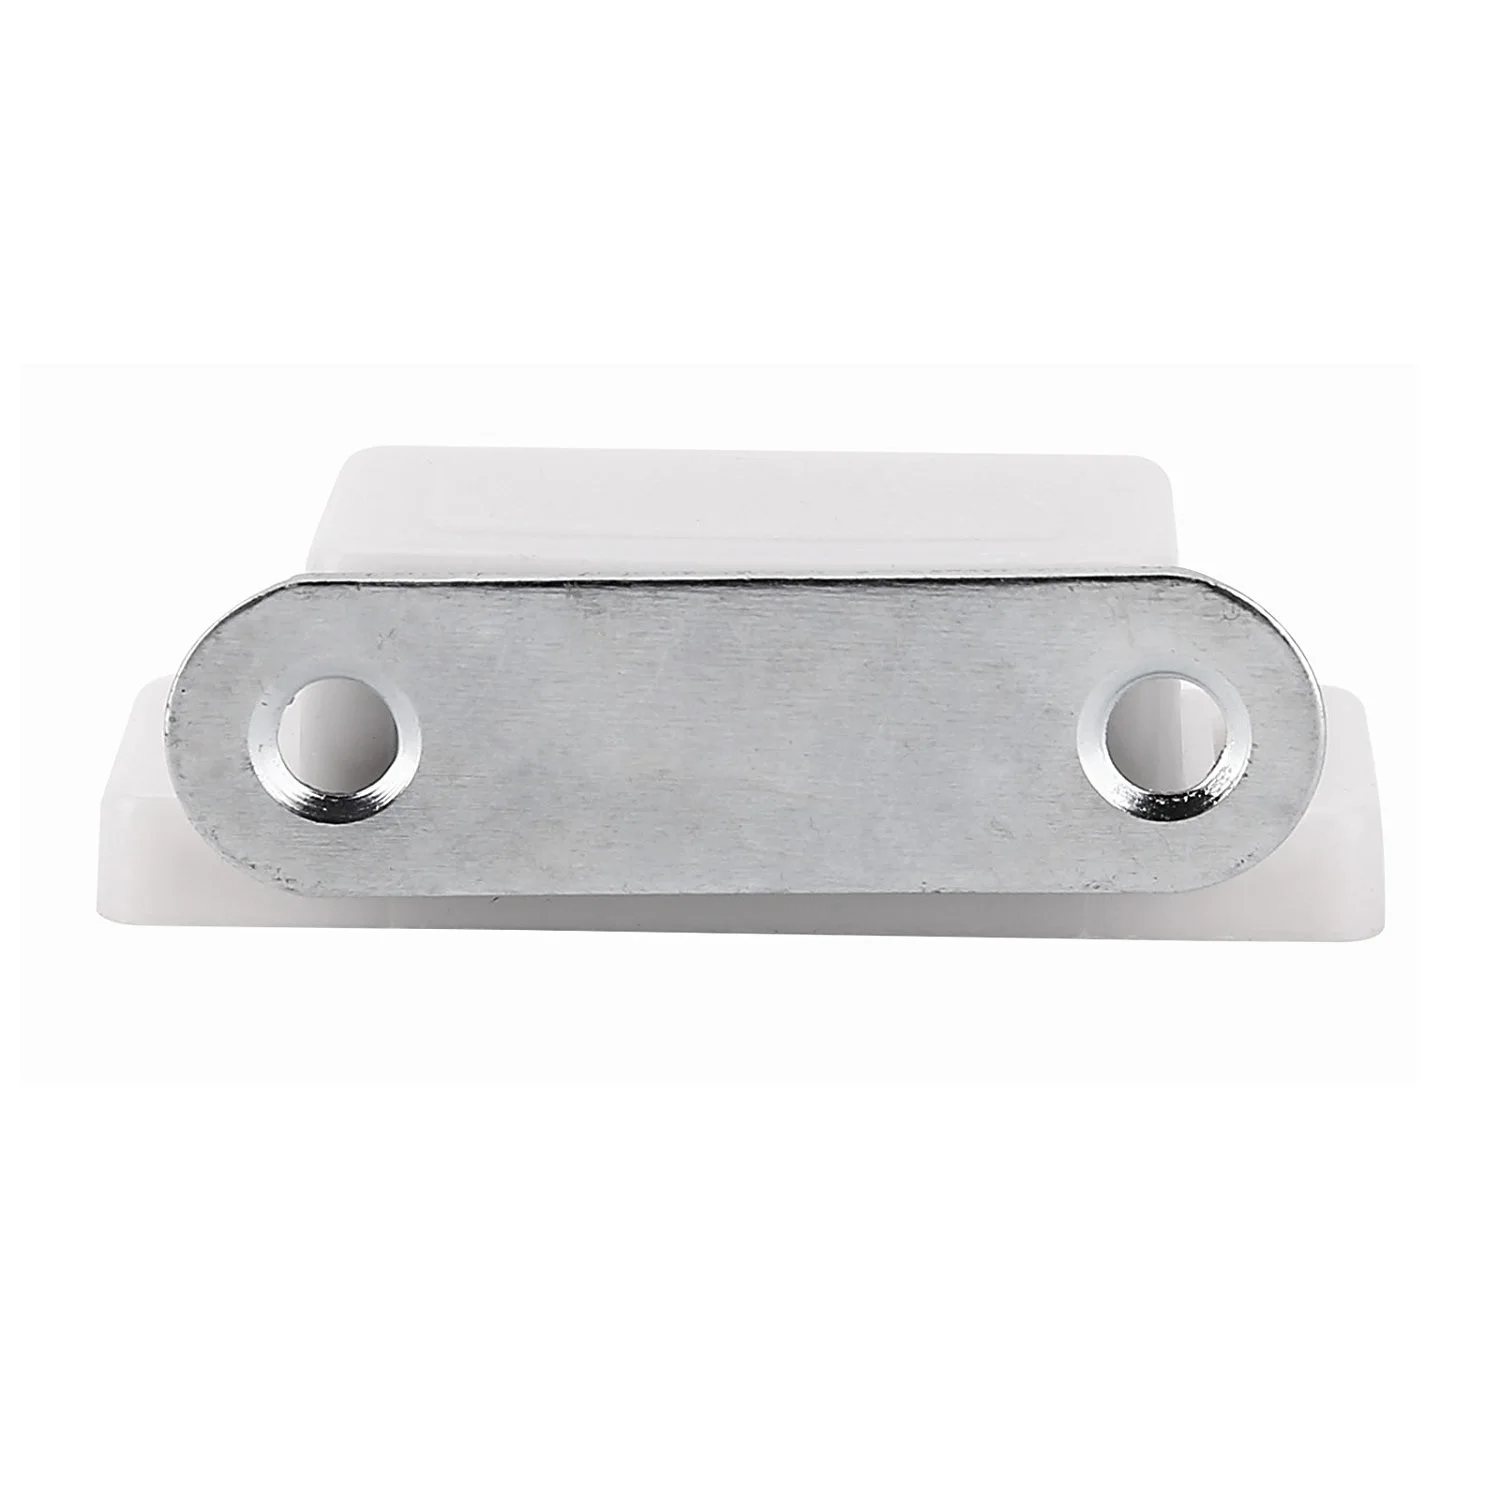 10 шт. белая нержавеющая сталь стопор для шкафа Магнитный ловушка магнит для шкафа Магнитная мебель дверь шкафа магнитный деташер